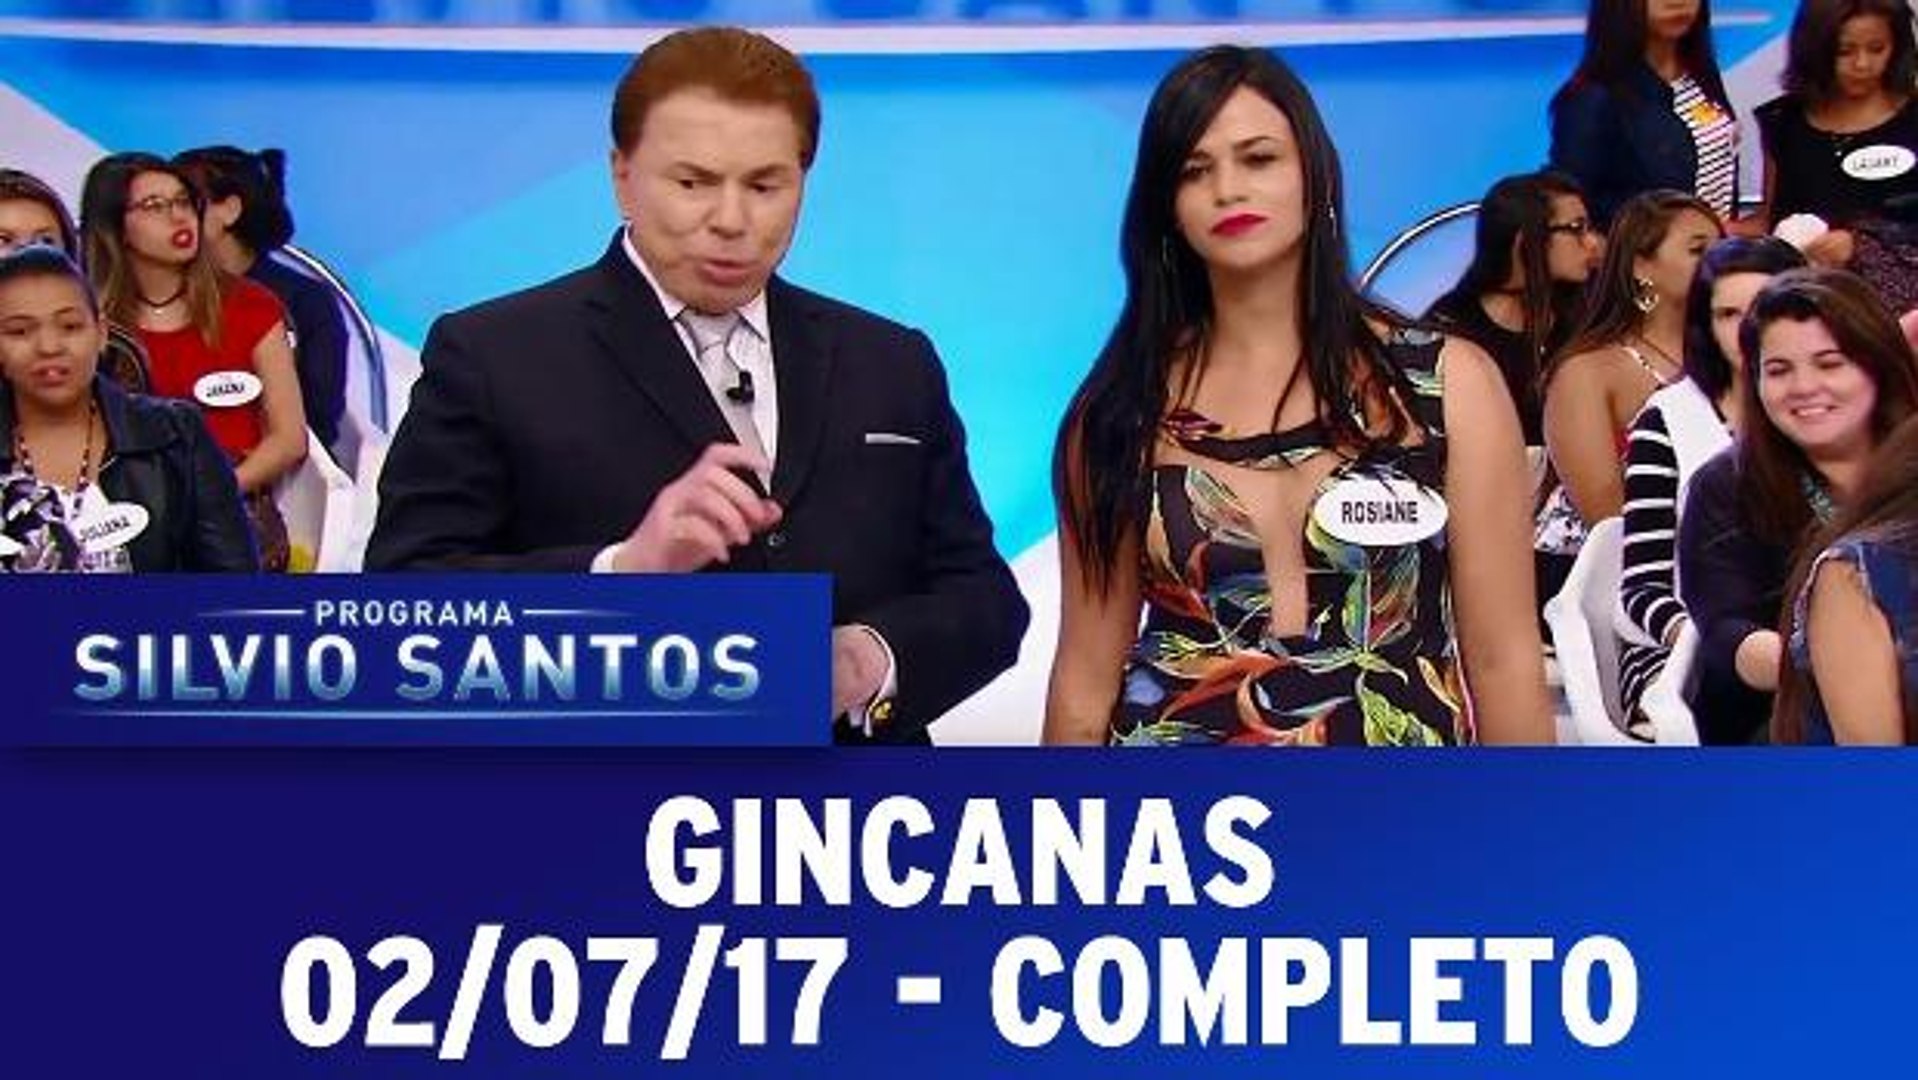 Jogo dos Pontinhos com Eliana - Completo - 10.05.15 - Vídeo